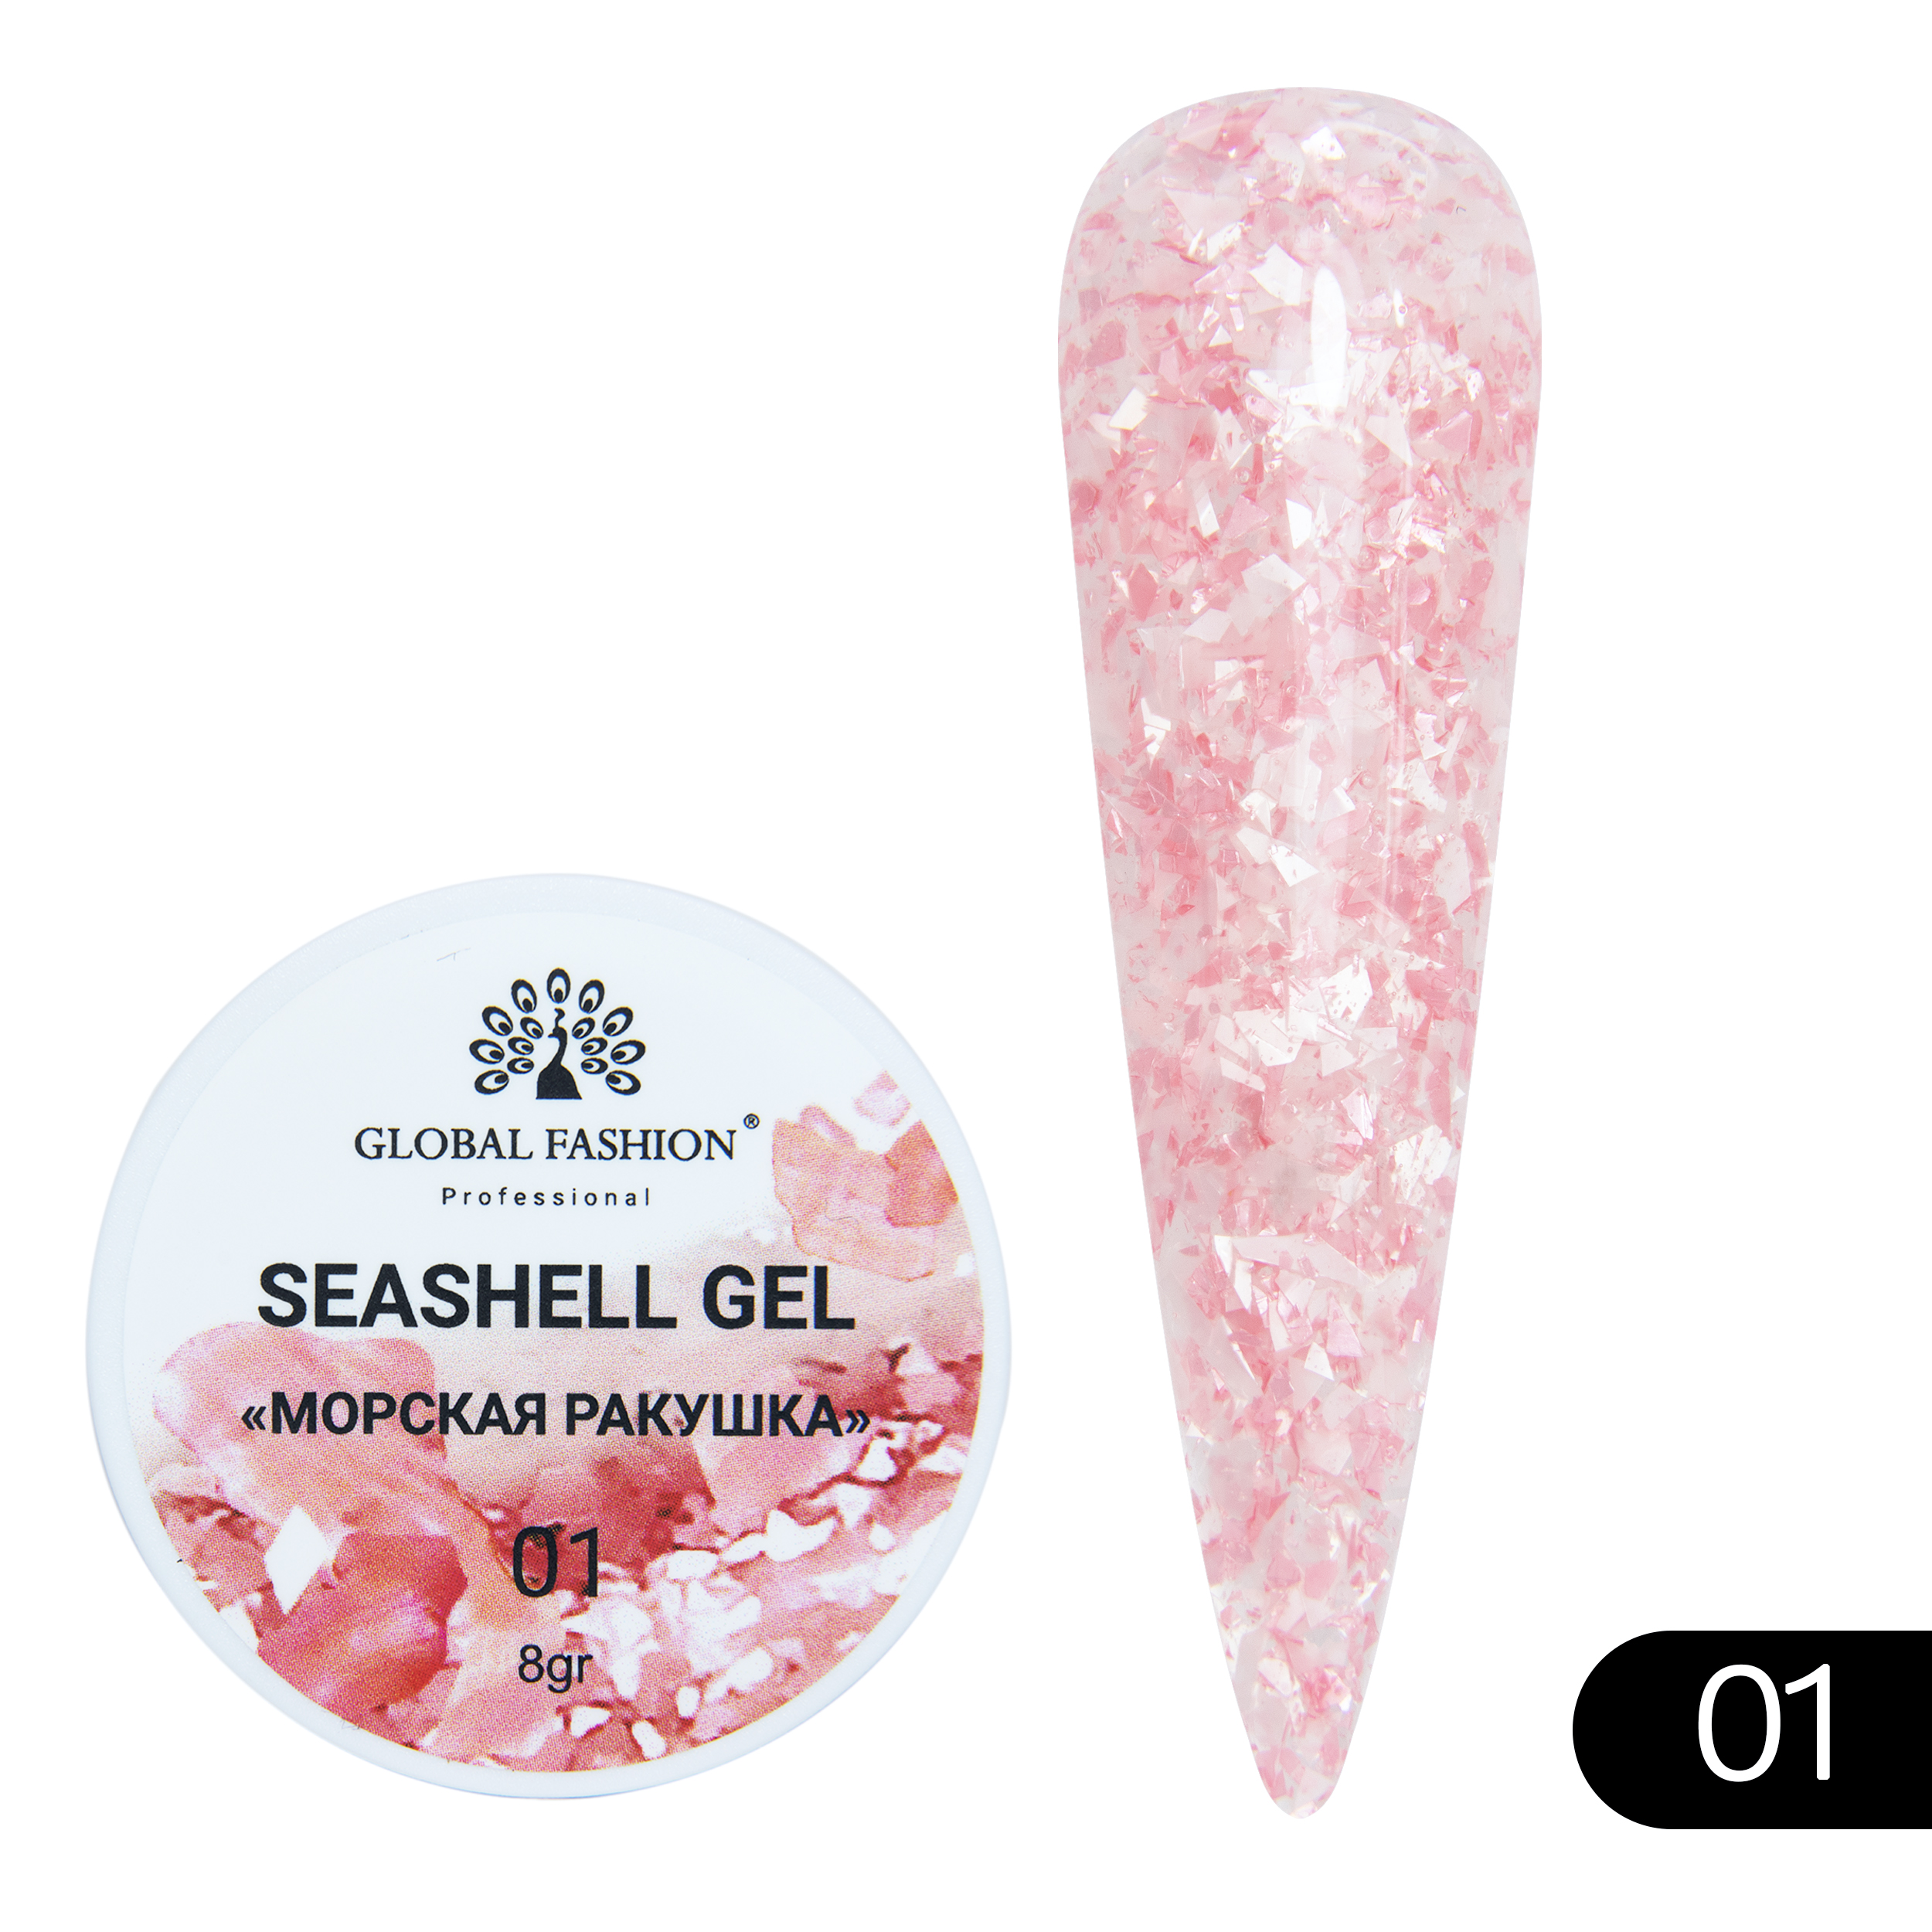 Гель-краска для ногтей Global Fashion Seashell Gel с мраморным эффектом ракушки №01 5 г закон ракушки